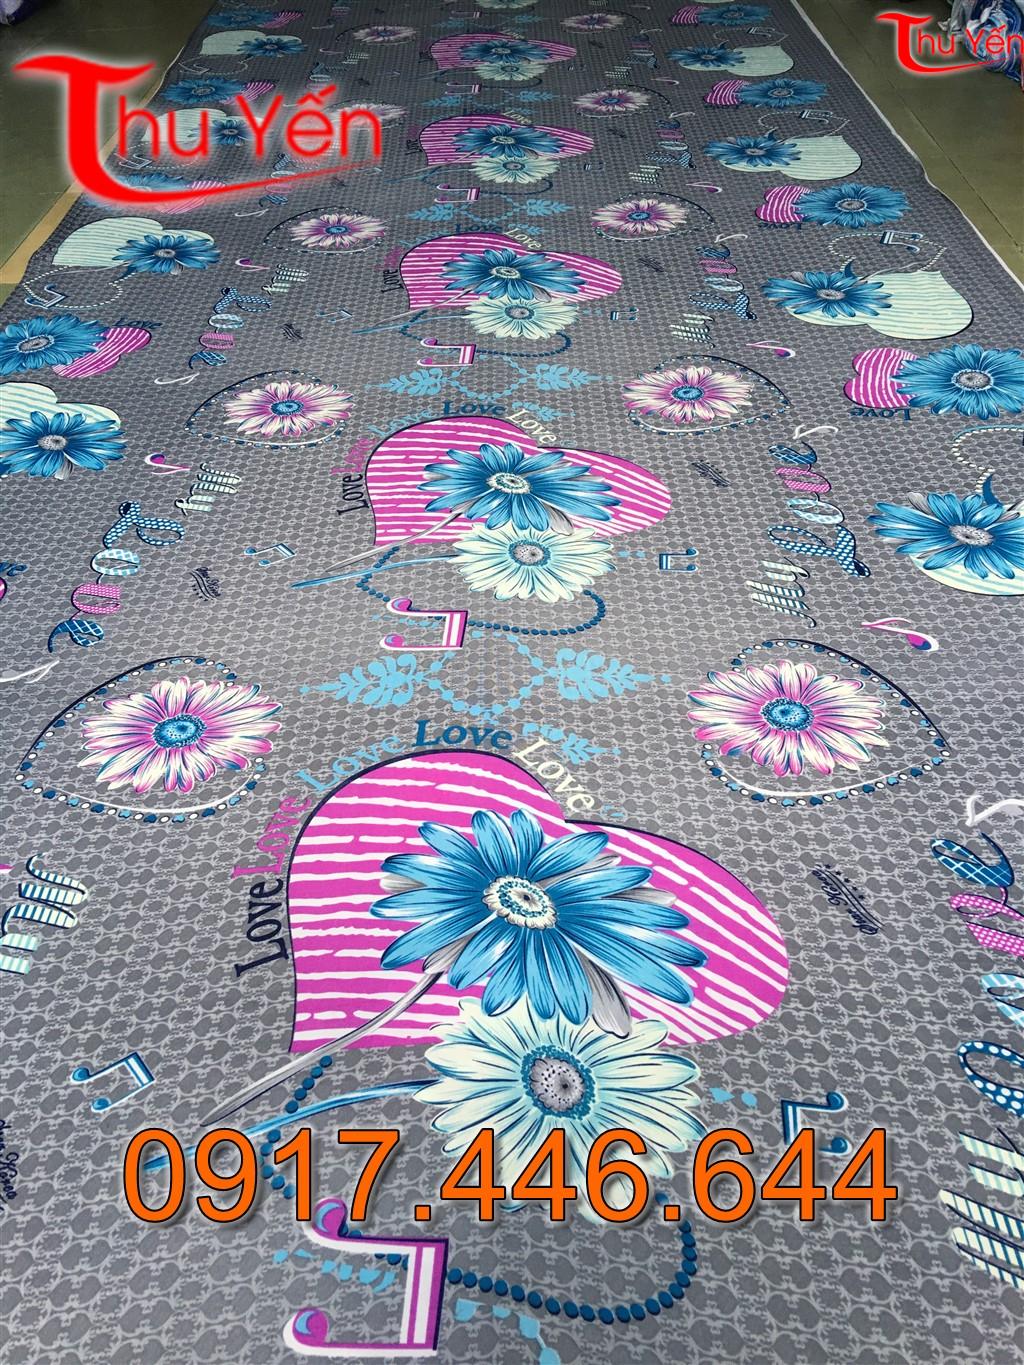 Vaithunthuyen.com nơi bán vải thun chất lượng với giá tốt nhất